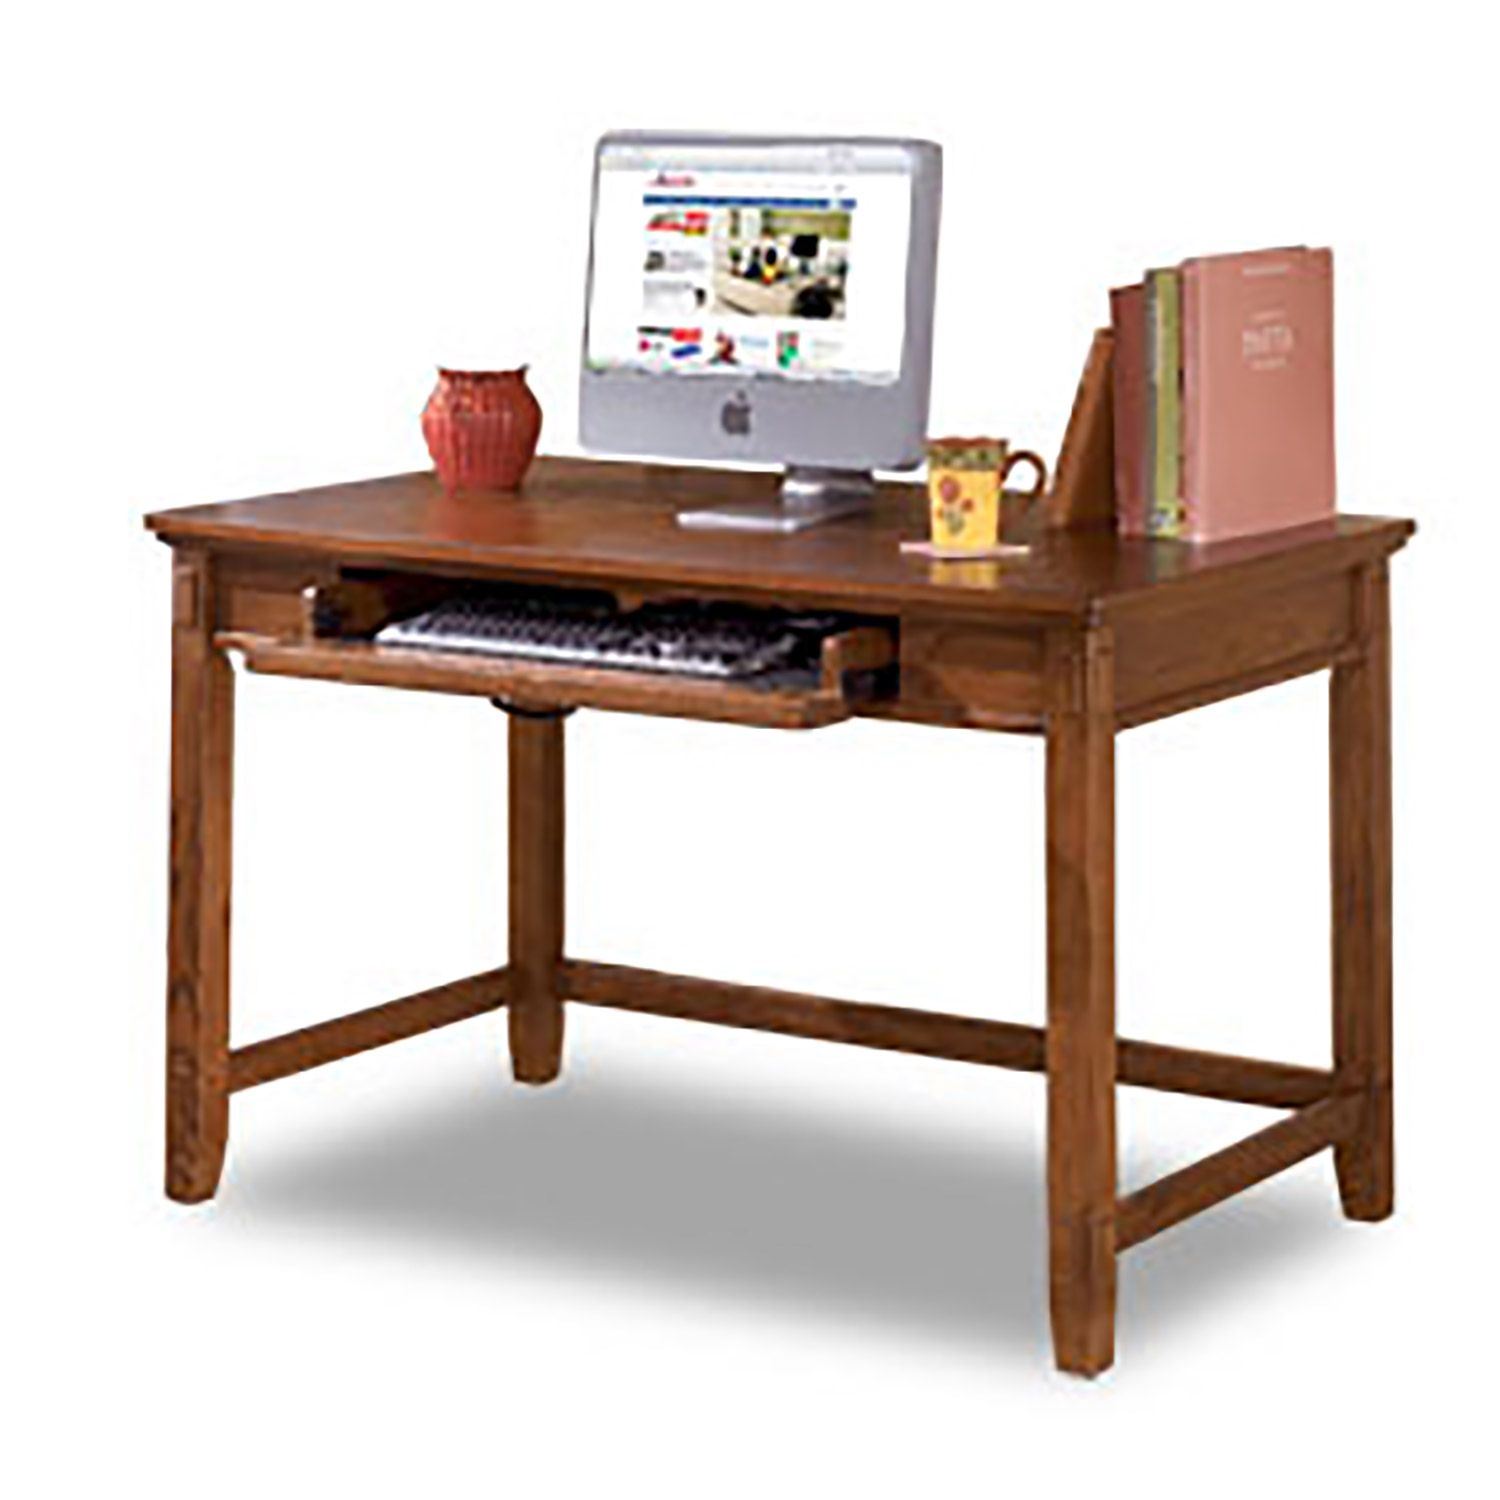 Cross Island Small Leg Desk H319 10 Ashley Furniture Afw Com